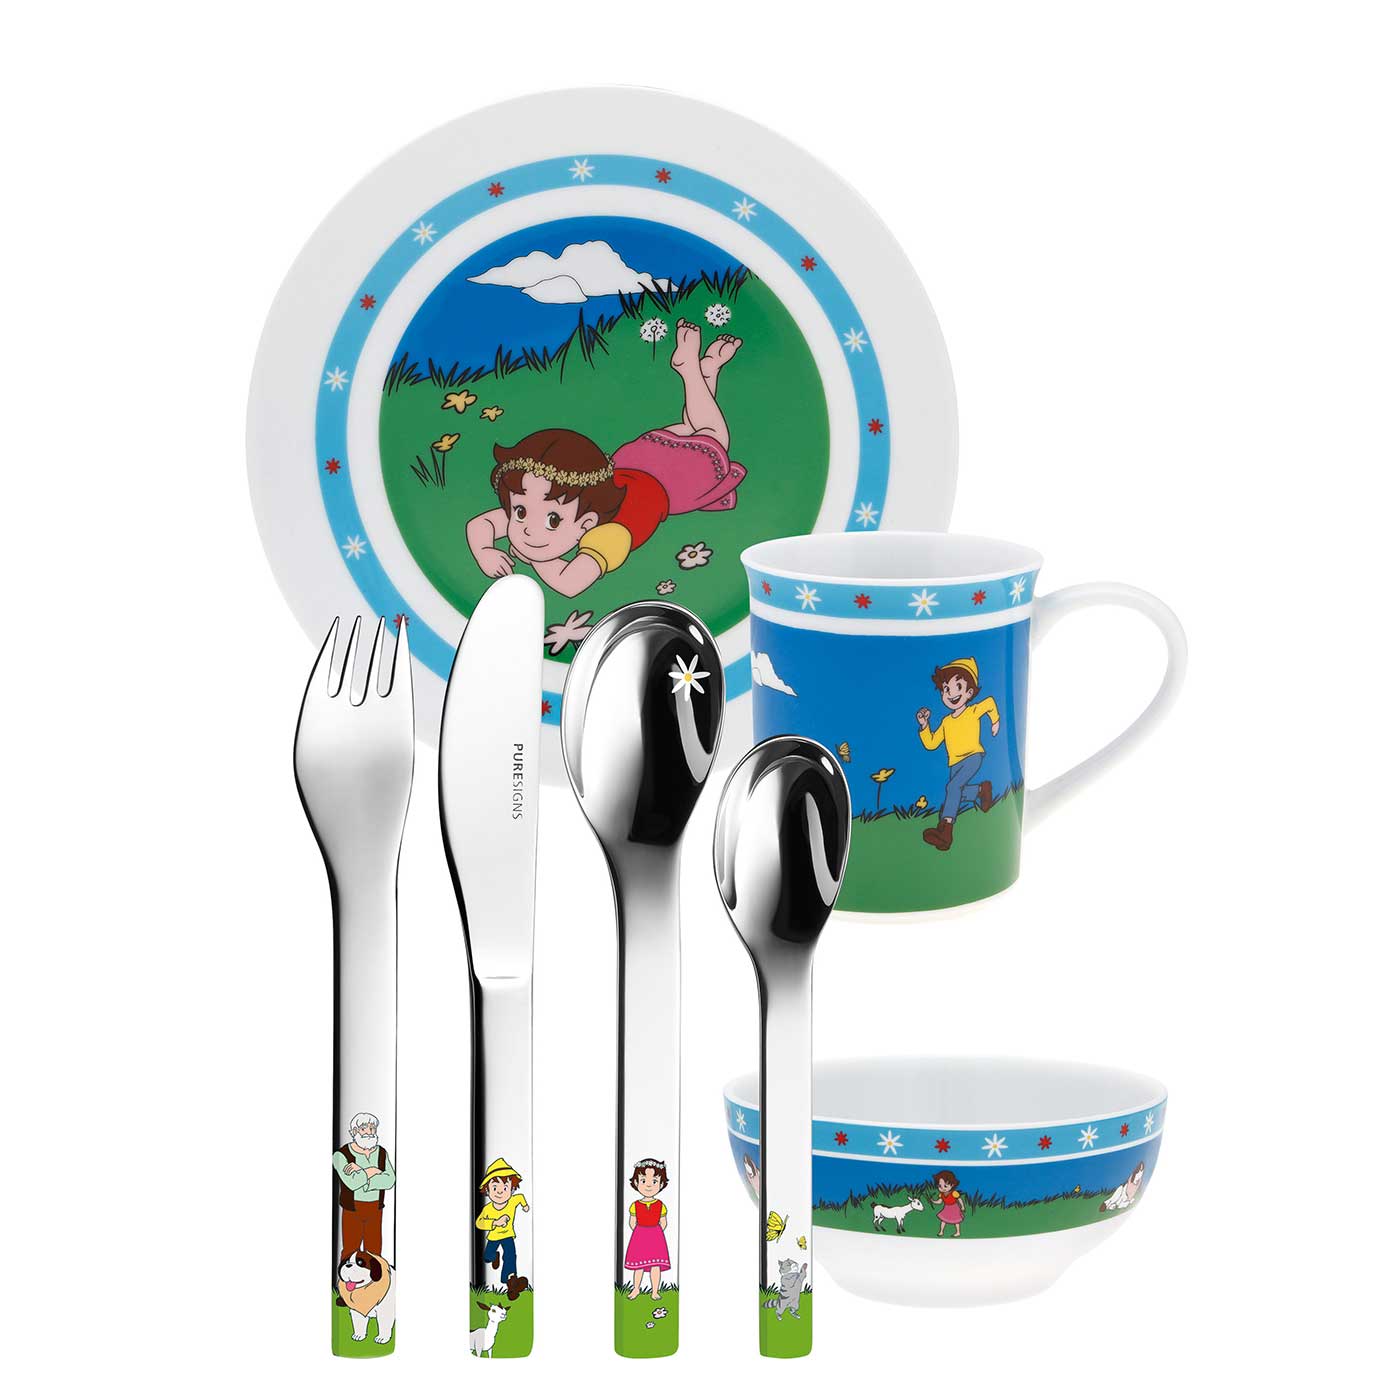 Puresigns One Набор детской посуды Heidi, 7 предметов | https://grandposuda.com.ua